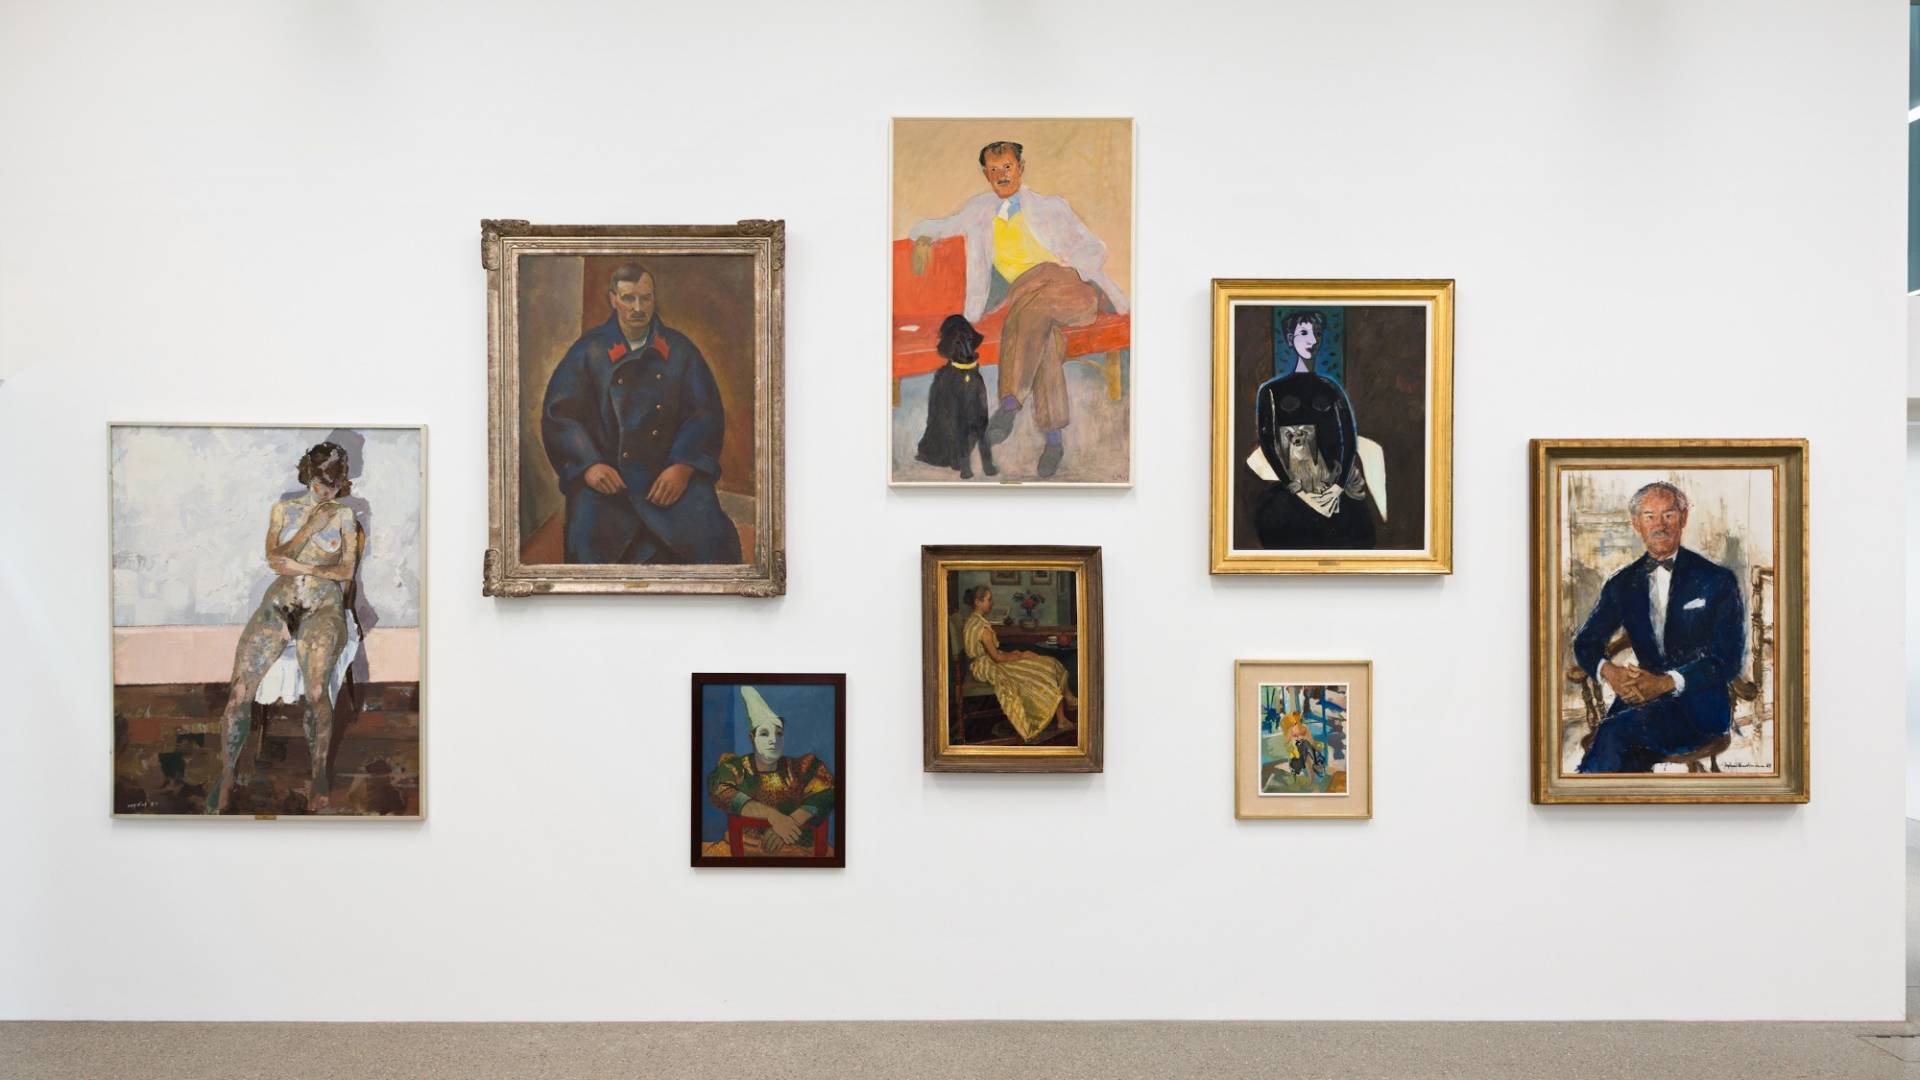 Otto quadri dalle cornici imponenti che ricordano tutti insieme una galleria degli antenati. Ritratti individuali di uomini e donne che posano seduti per il pittore o la pittrice. 